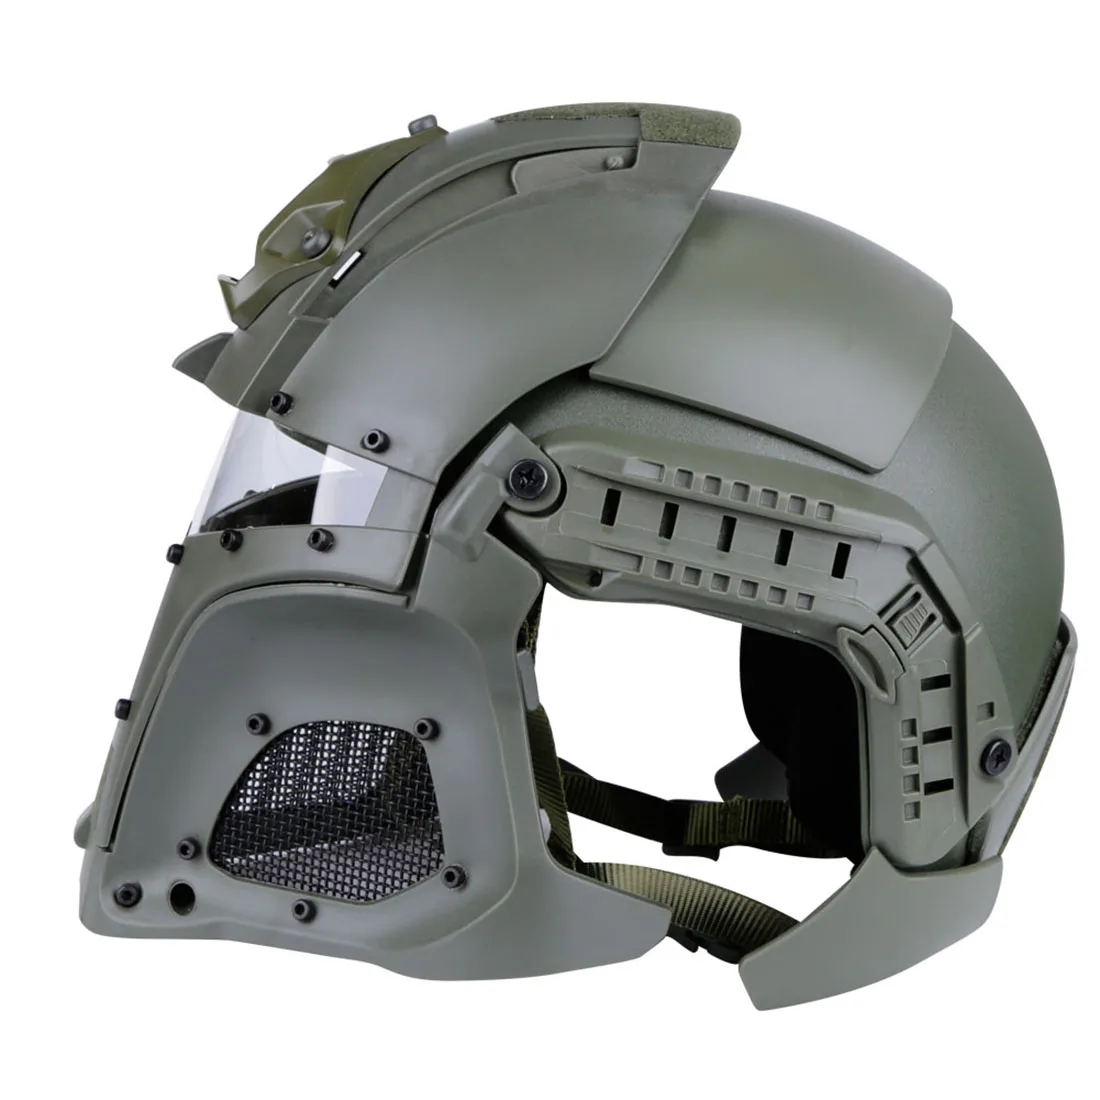 Купить страйкбольный шлем. Страйкбол WOSPORT Tactical Helmet. Тактический шлем Ballistic Helmet. WOSPORT Airsoft шлем. Шлем Ронин баллистик Хелмет.